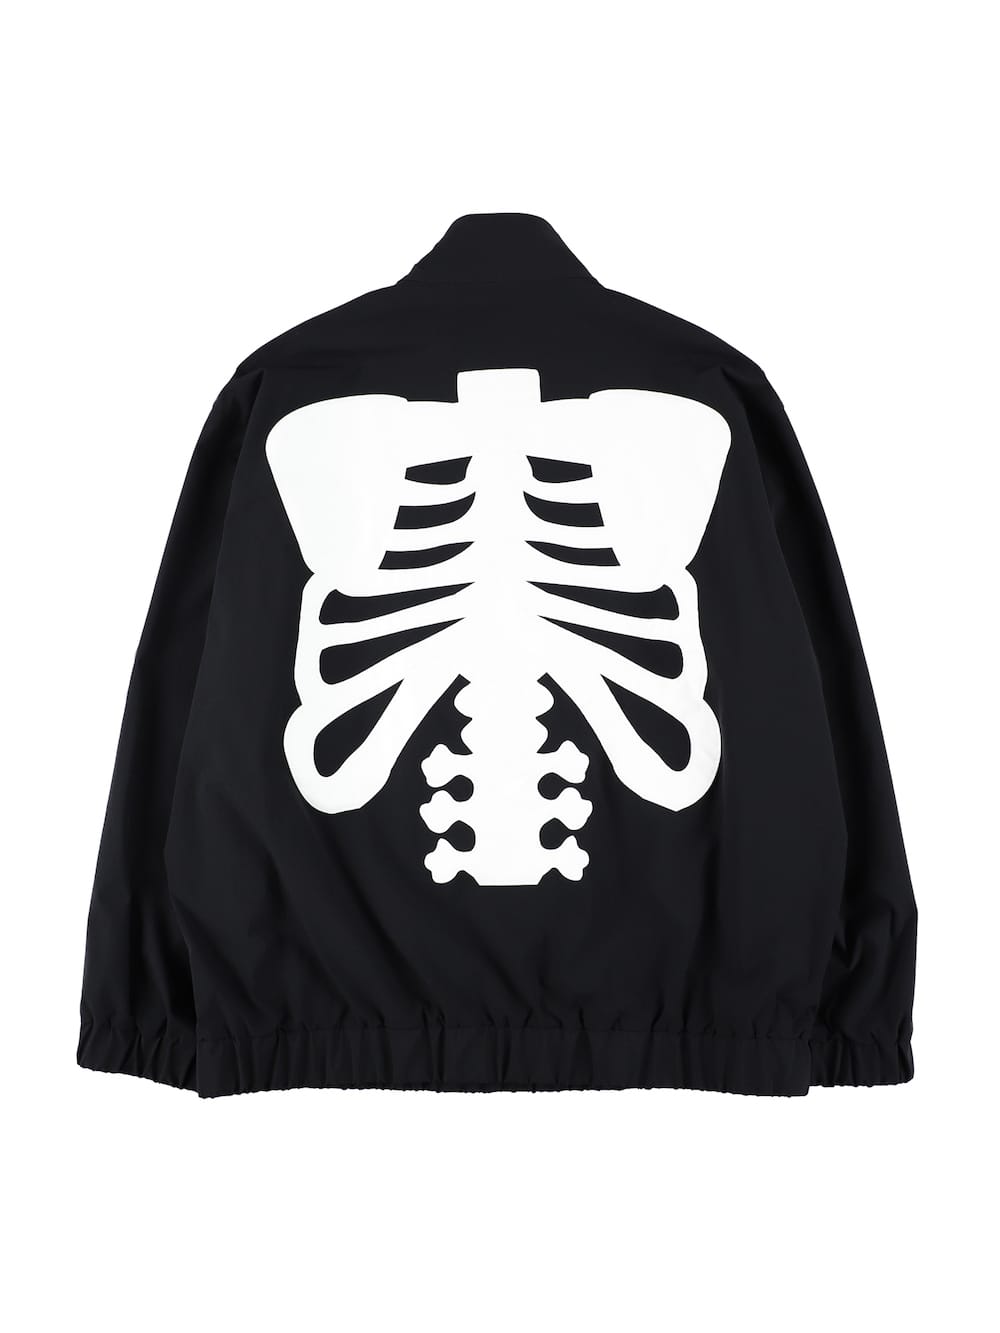 back gusset sleeve track jacket. (bone type01)